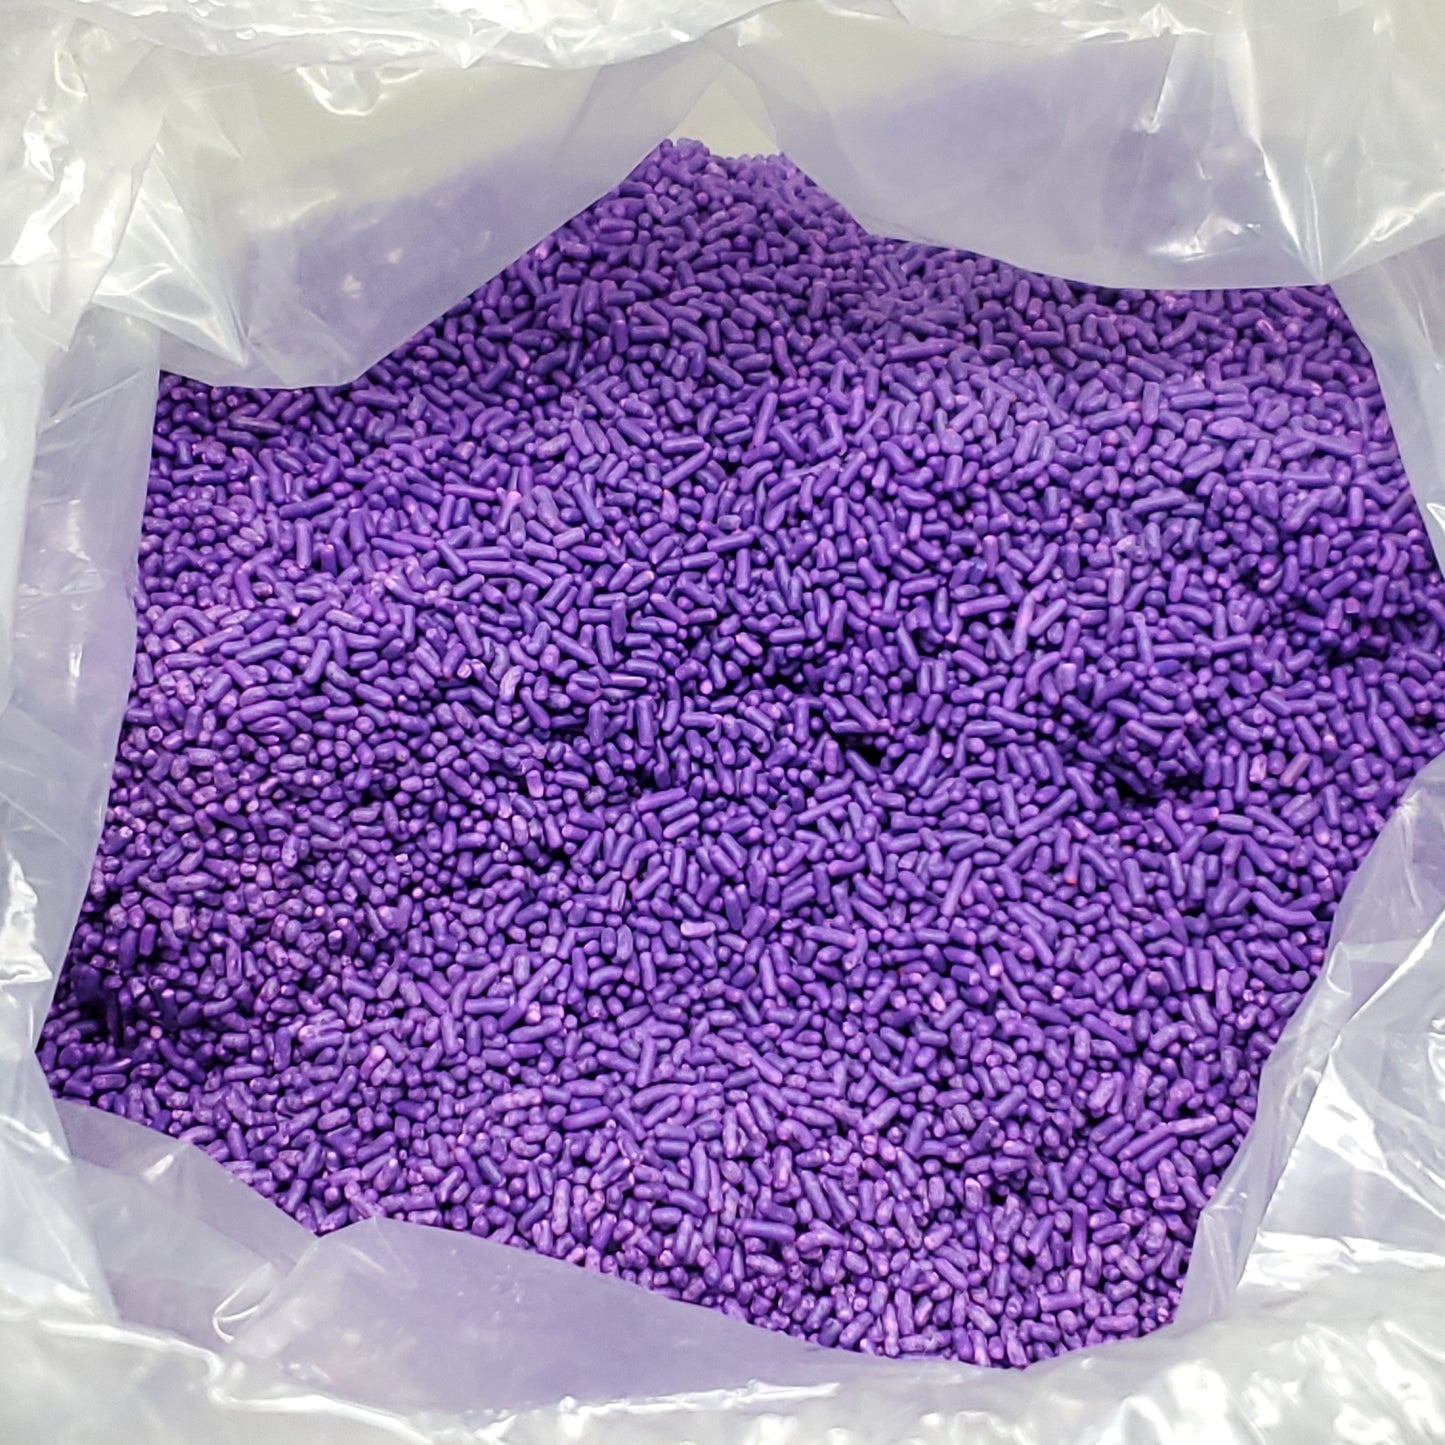 TRI STATE SPECIALTIES LLC Purple Sprinkles 10 LBS (04/24) Trans Fat Free